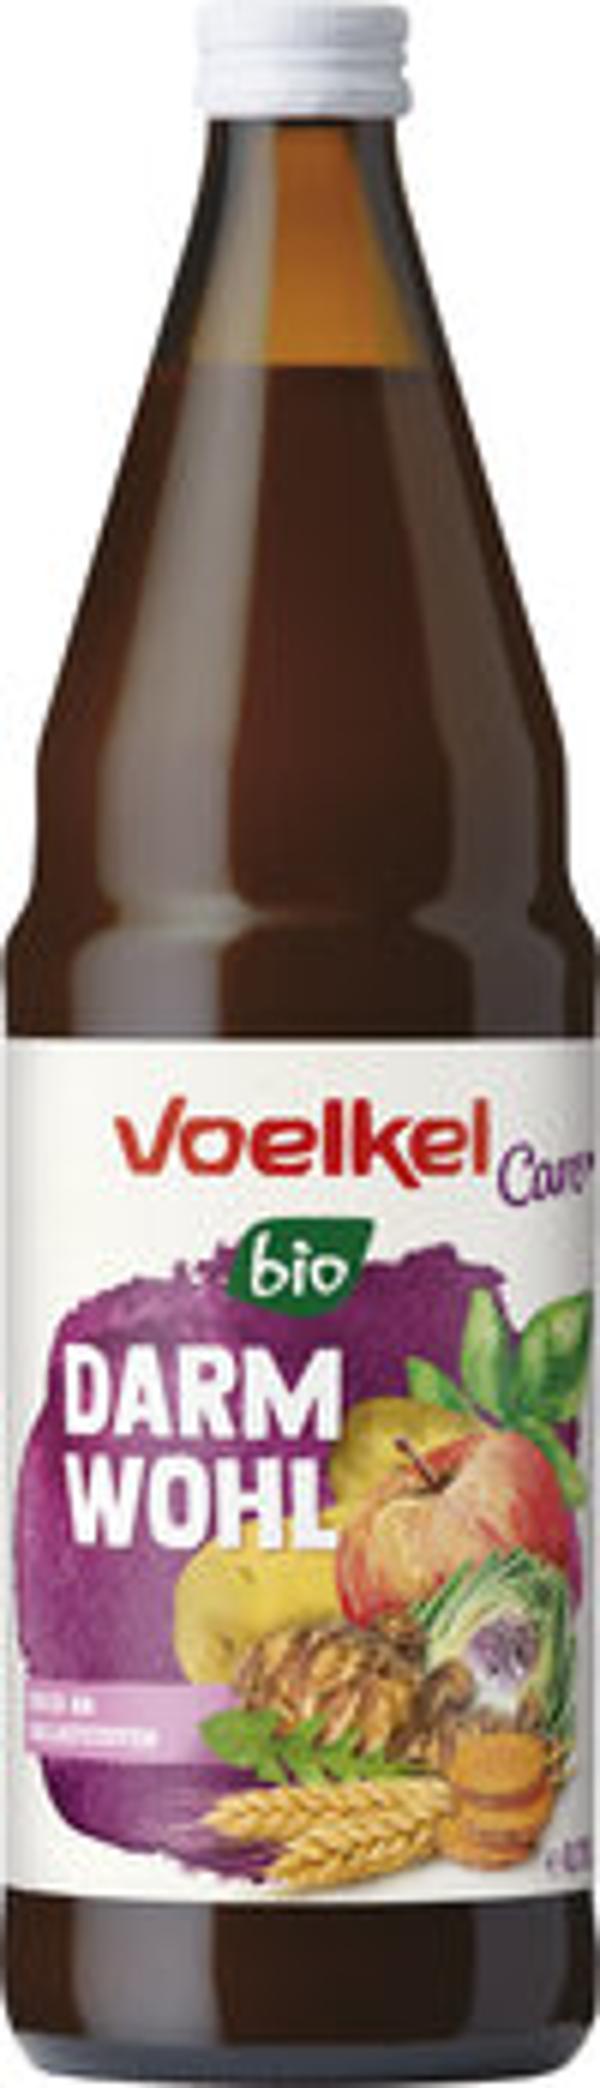 Produktfoto zu Voelkel Care Darmwohl 0,75l